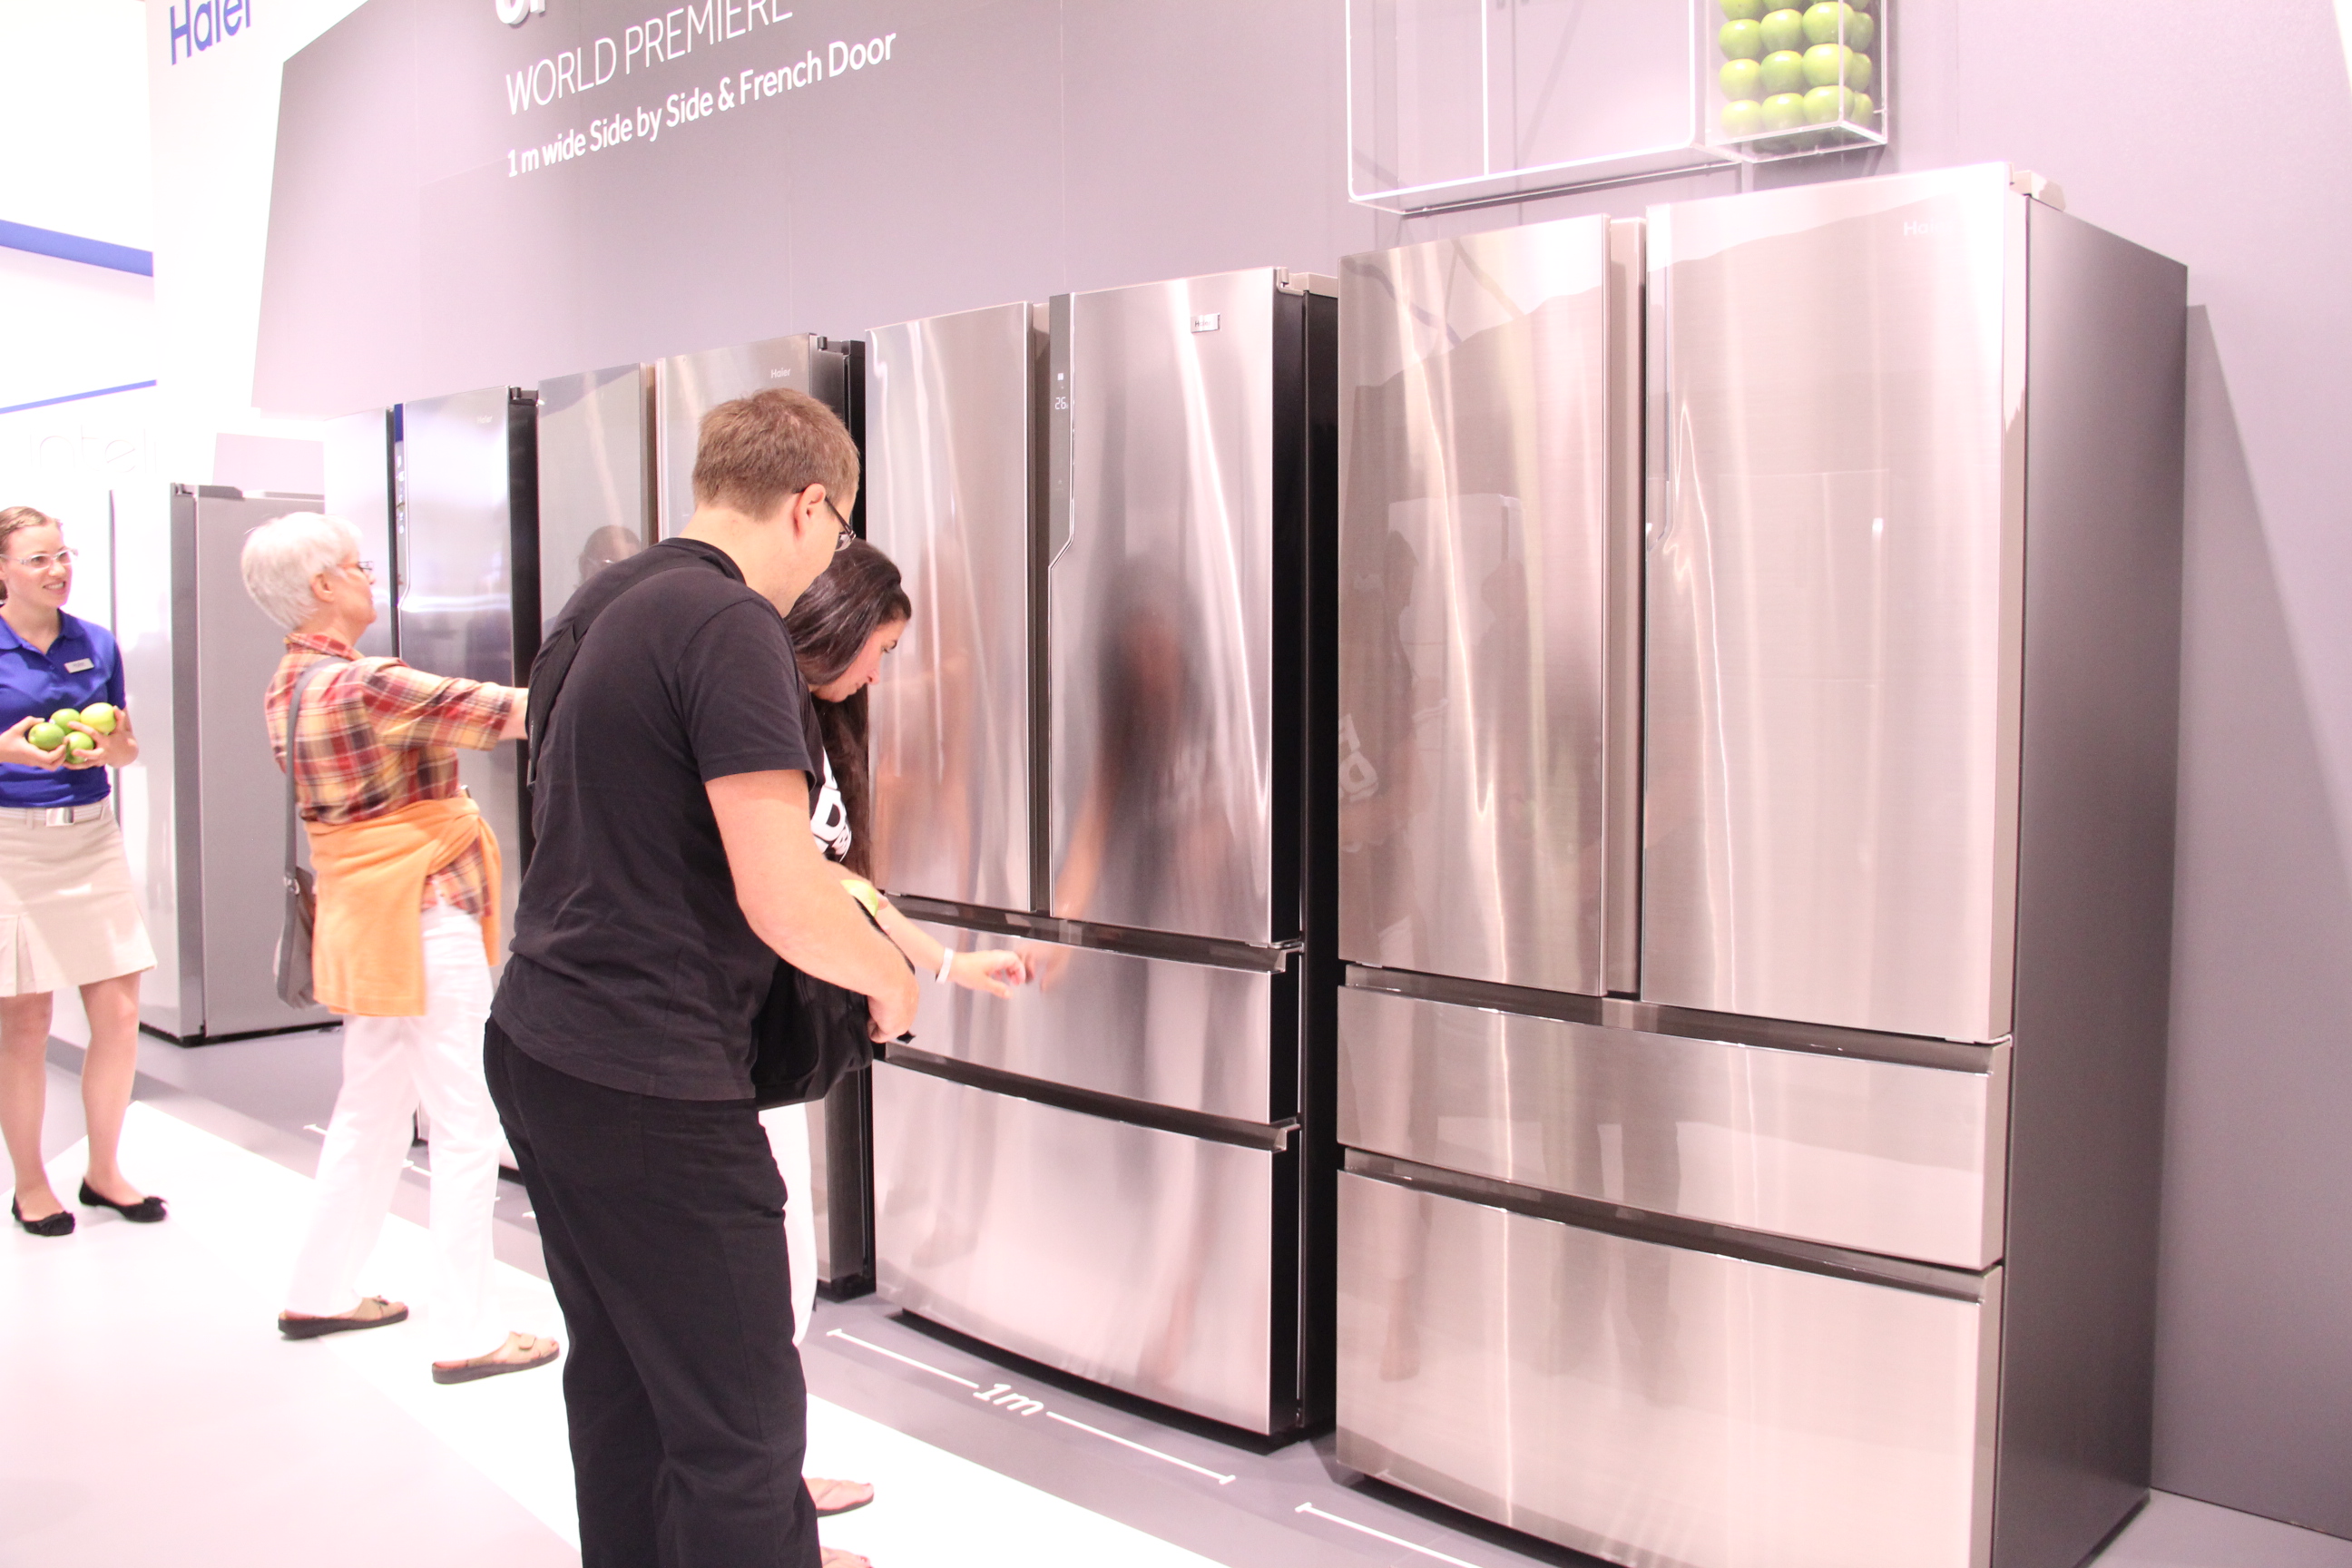 海尔主导智能冰箱行业进入自主通讯时代